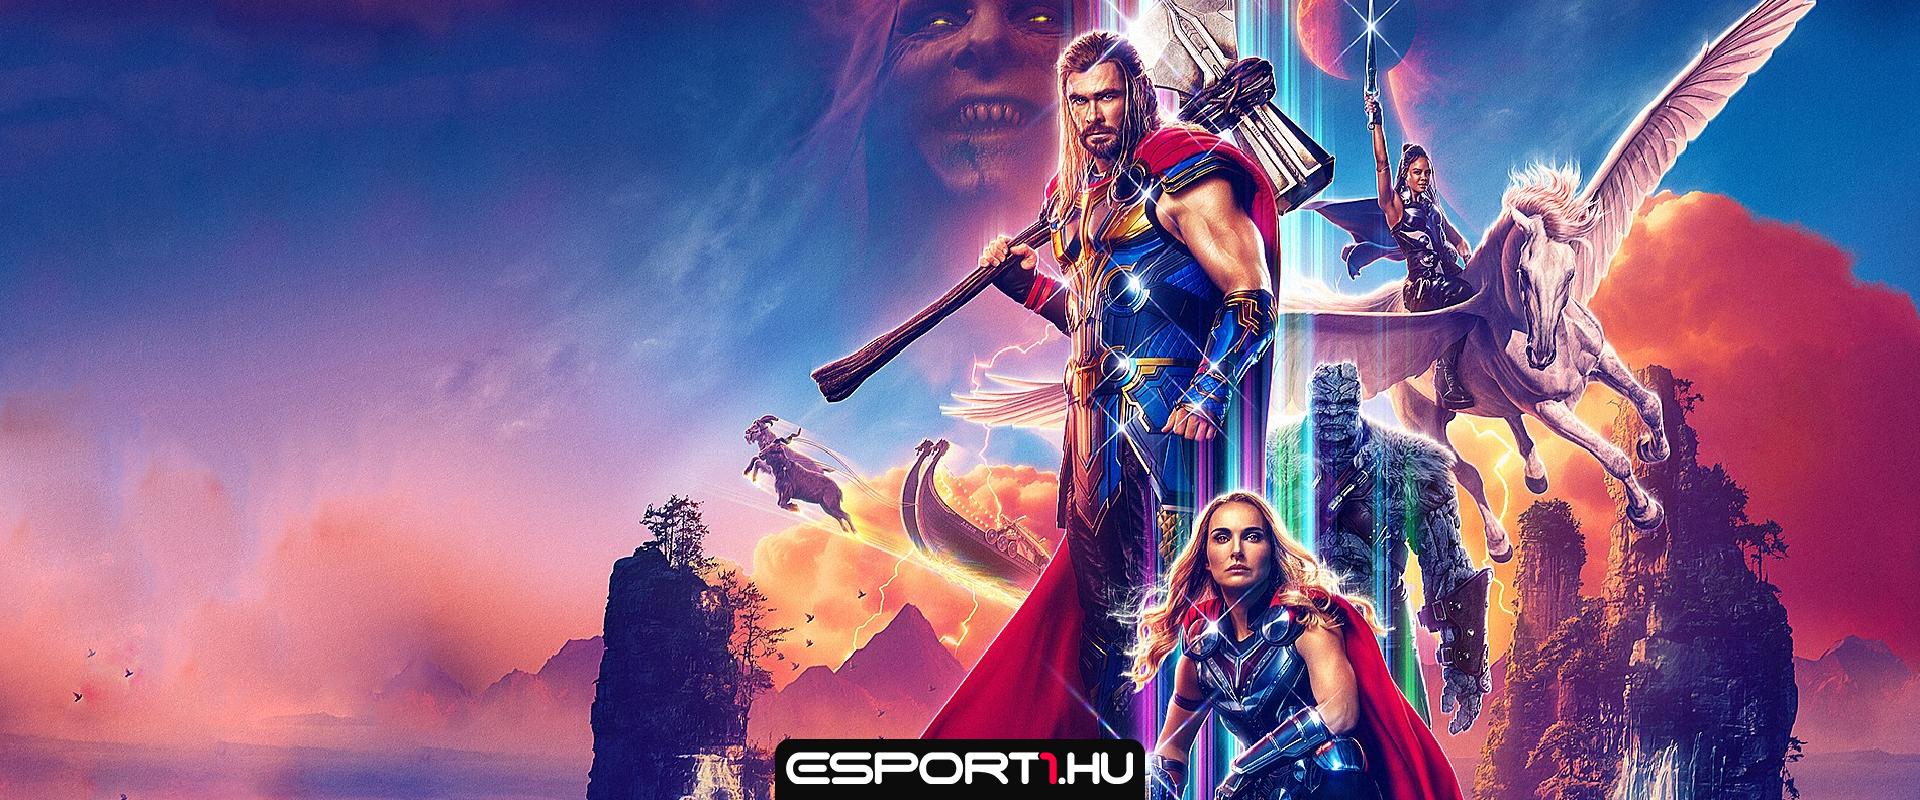 Már magyarul is nézhető a Thor: Szerelem és mennydörgés új előzetese